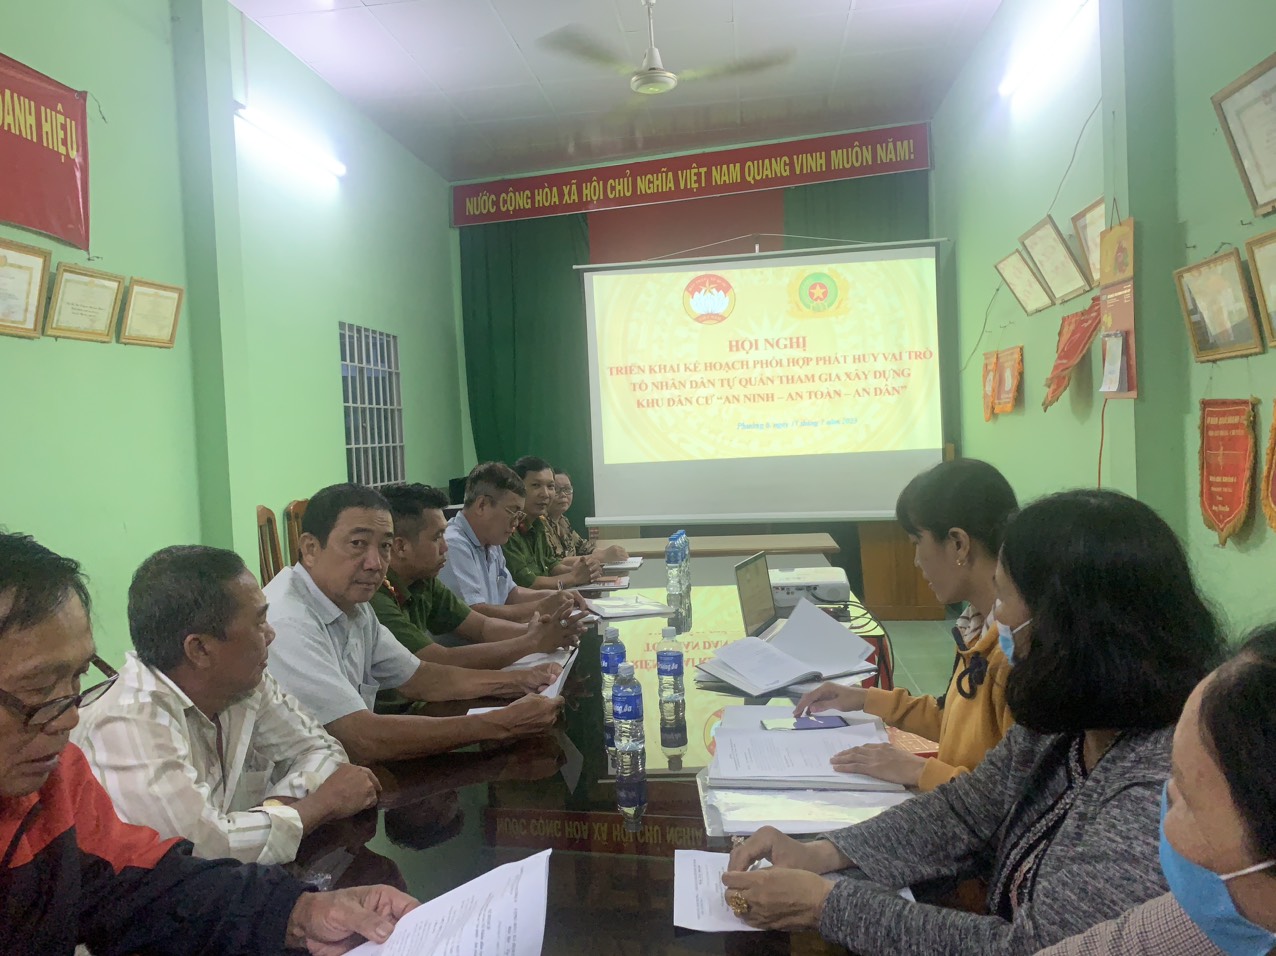 Ủy ban mặt trận tổ quốc Việt Nam Phường 6 triển khai kế hoạch Tổ Nhân dân tự quản tham gia xây dựng khu dân cư “An ninh - An toàn - An dân”